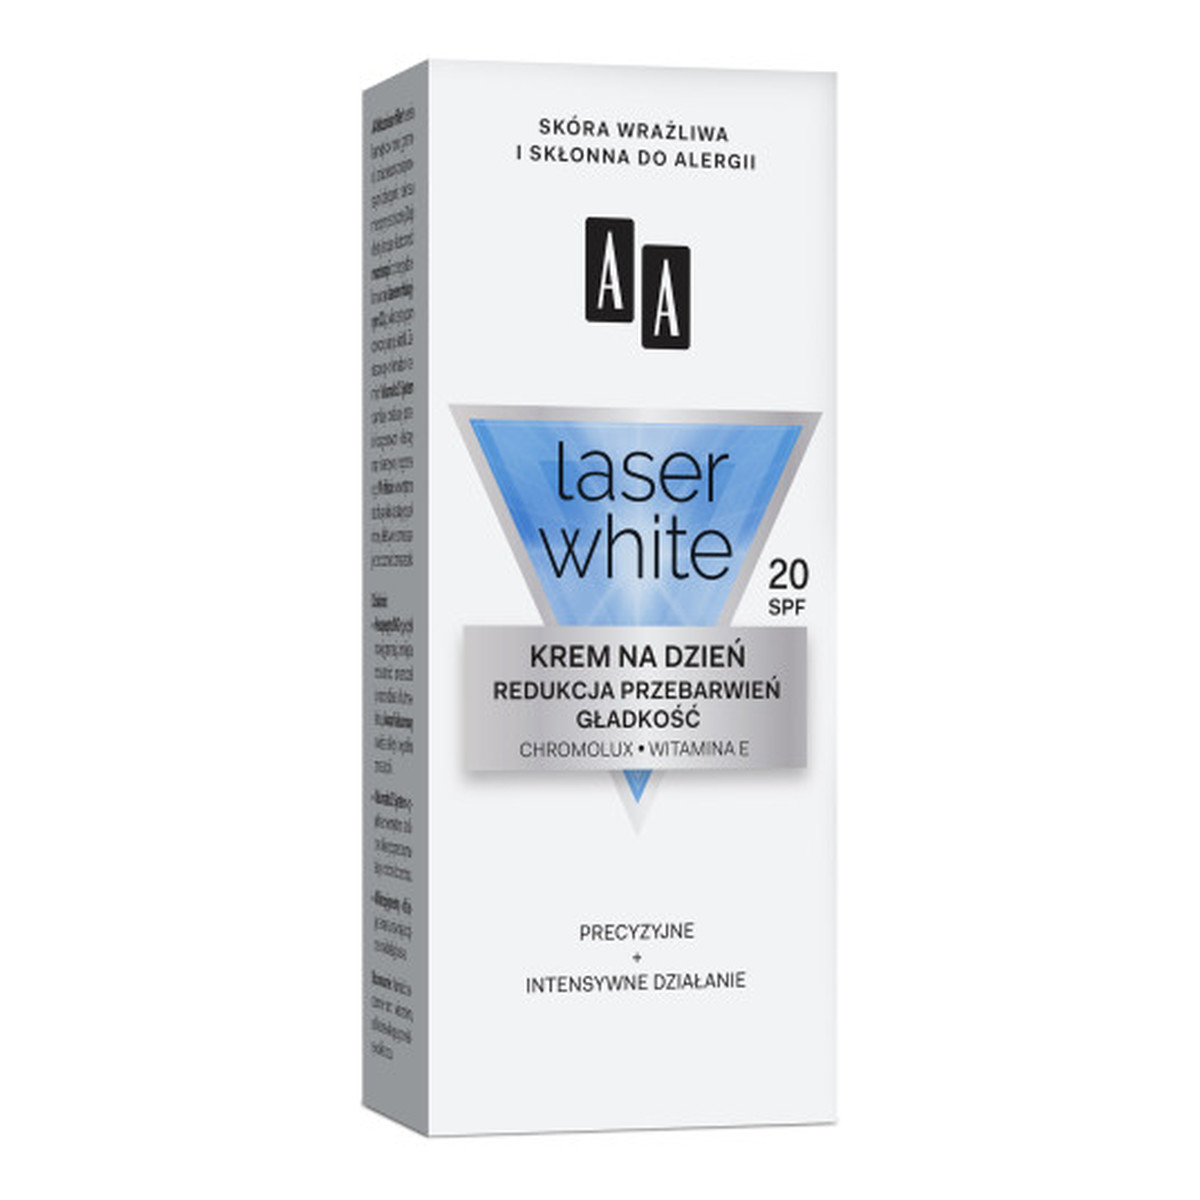 AA Laser White Krem Do Twarzy Redukcja Przebarwień + Gładkość Na Dzień SPF 20 30ml